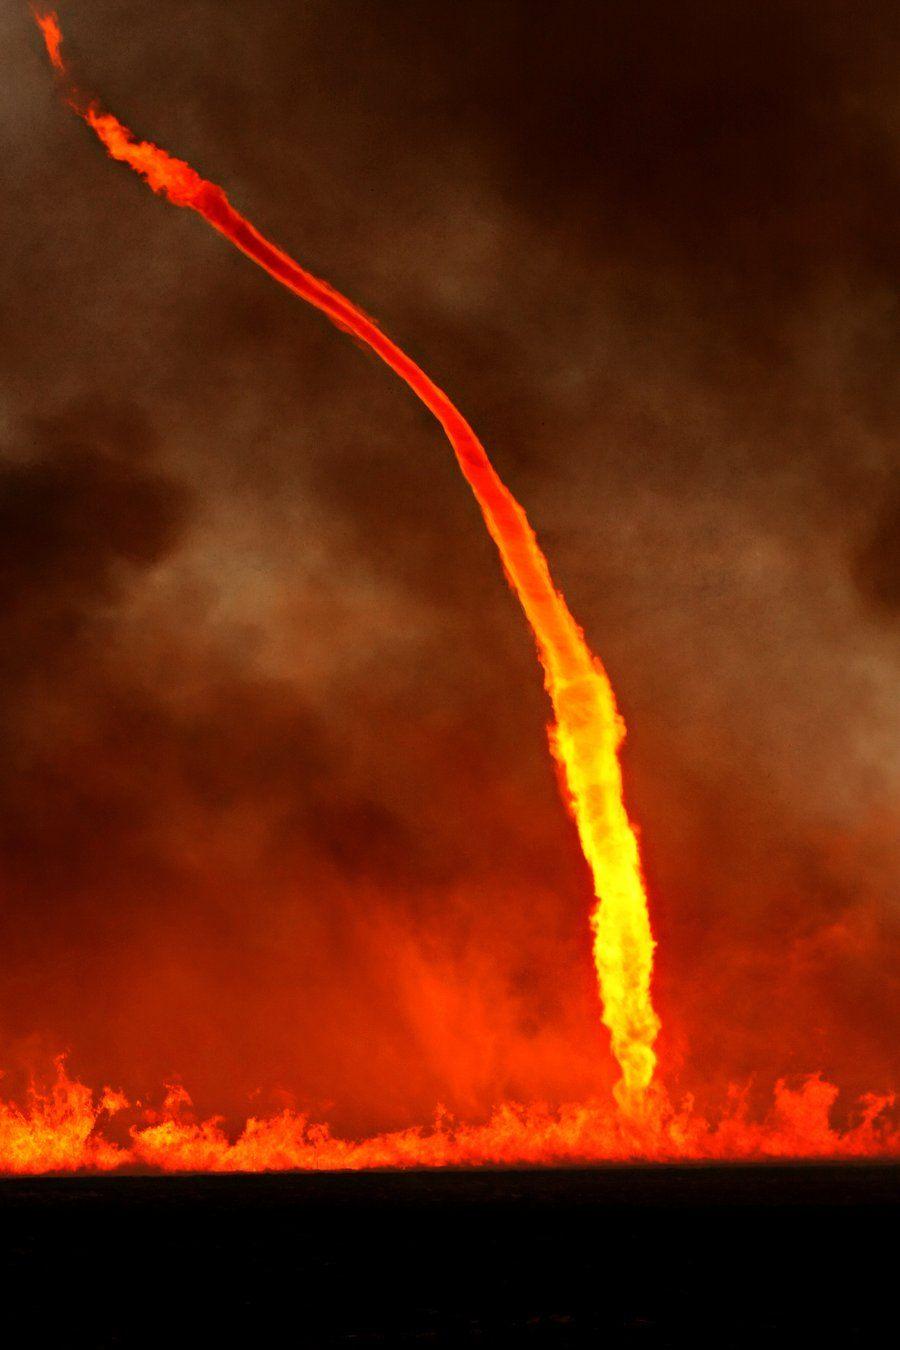 bluepueblo via munan15 Tumblr: Fire Tornado, Oklahoma photo